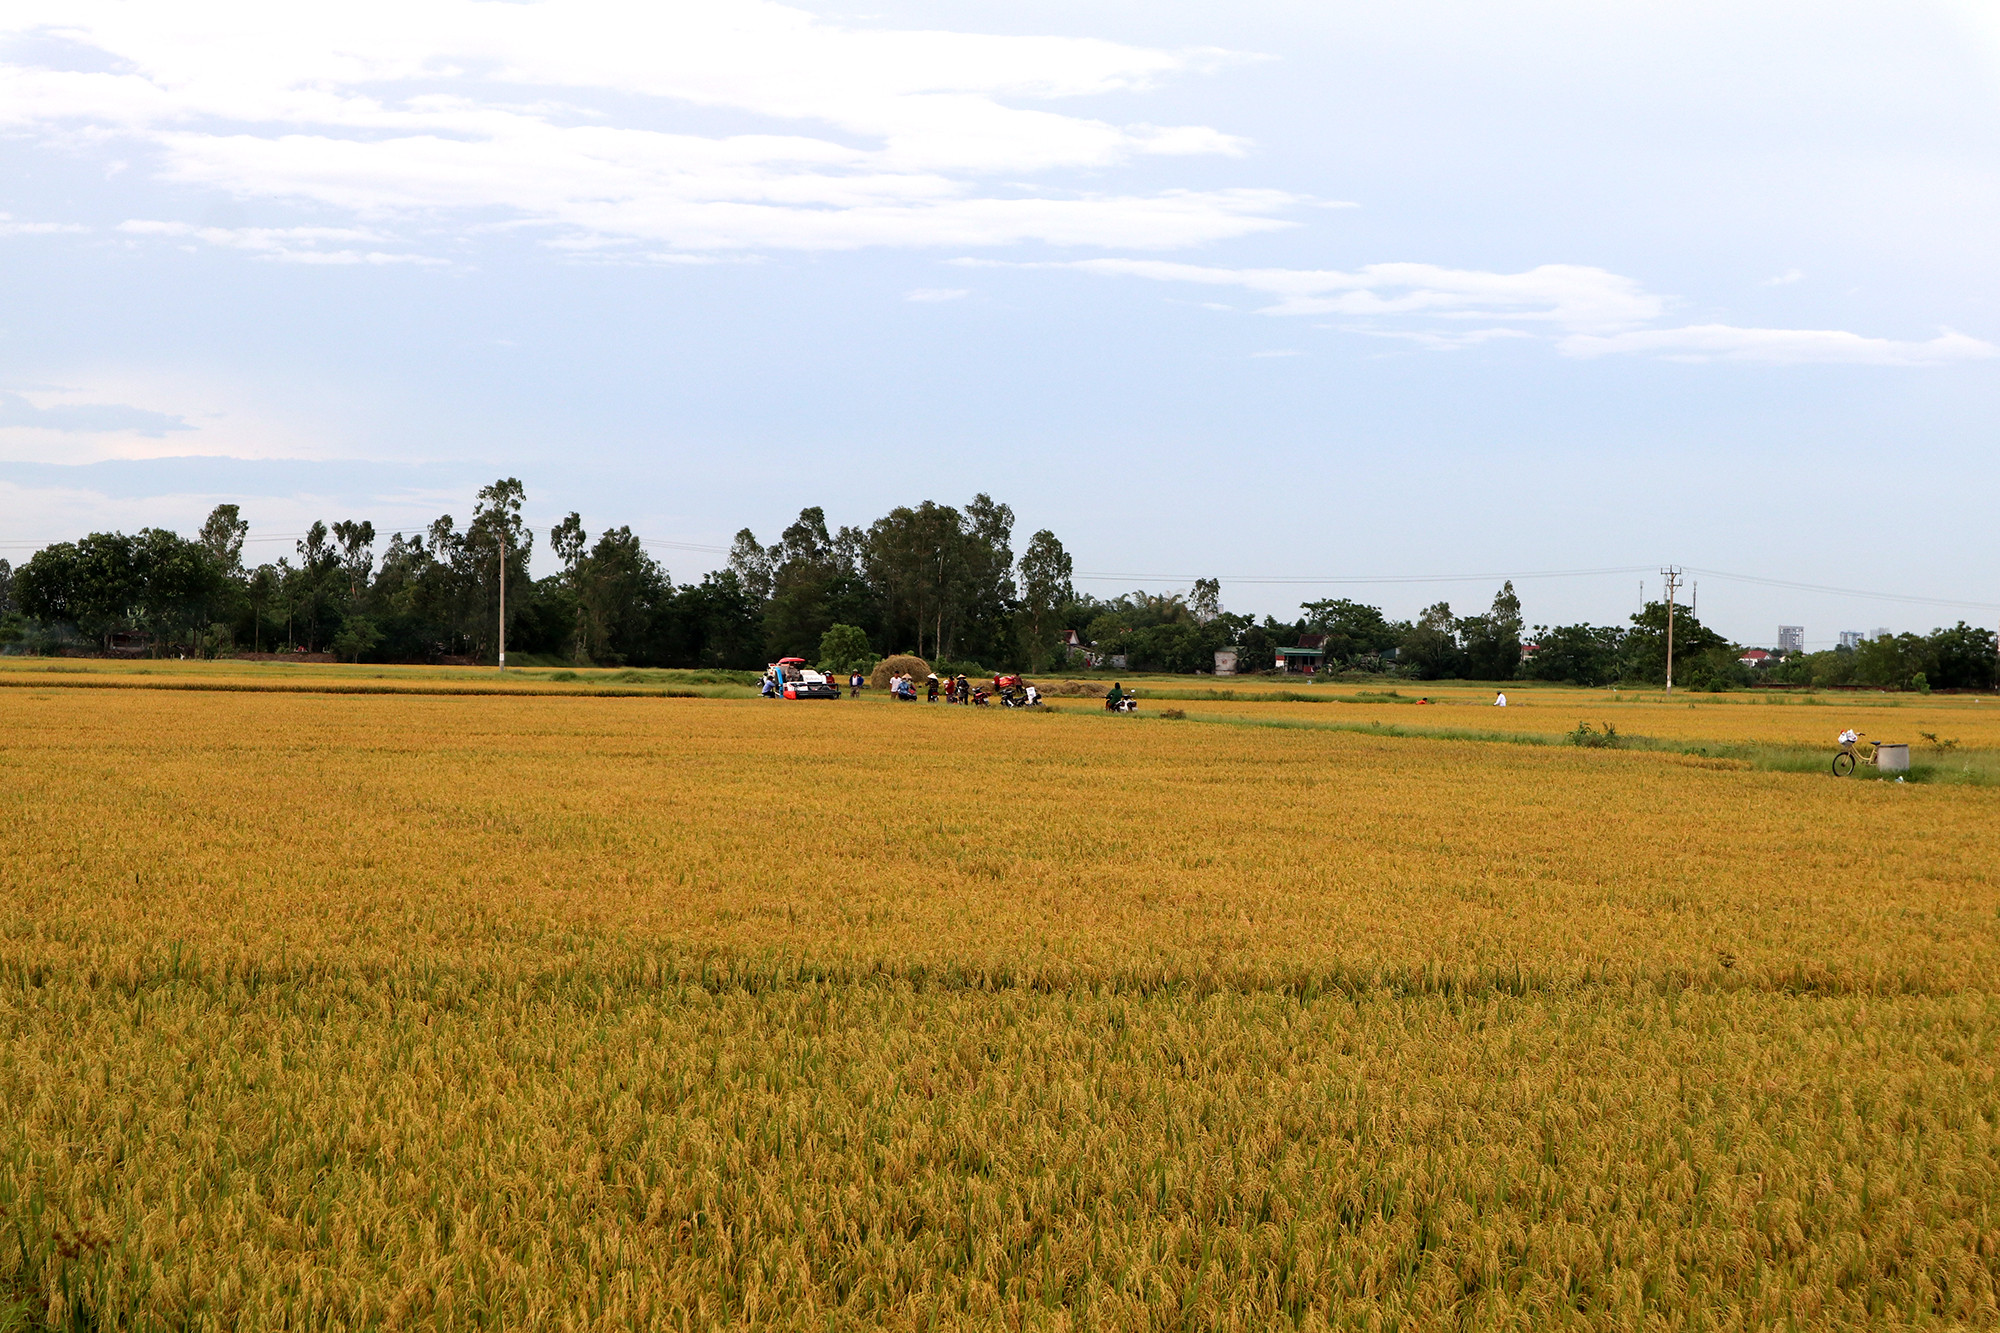 Cả vùng đồng hàng trăm mẫu, lúa đã chín nhưng chỉ có 1 máy gặt phục vụ dân. Ảnh: Thanh Phúc